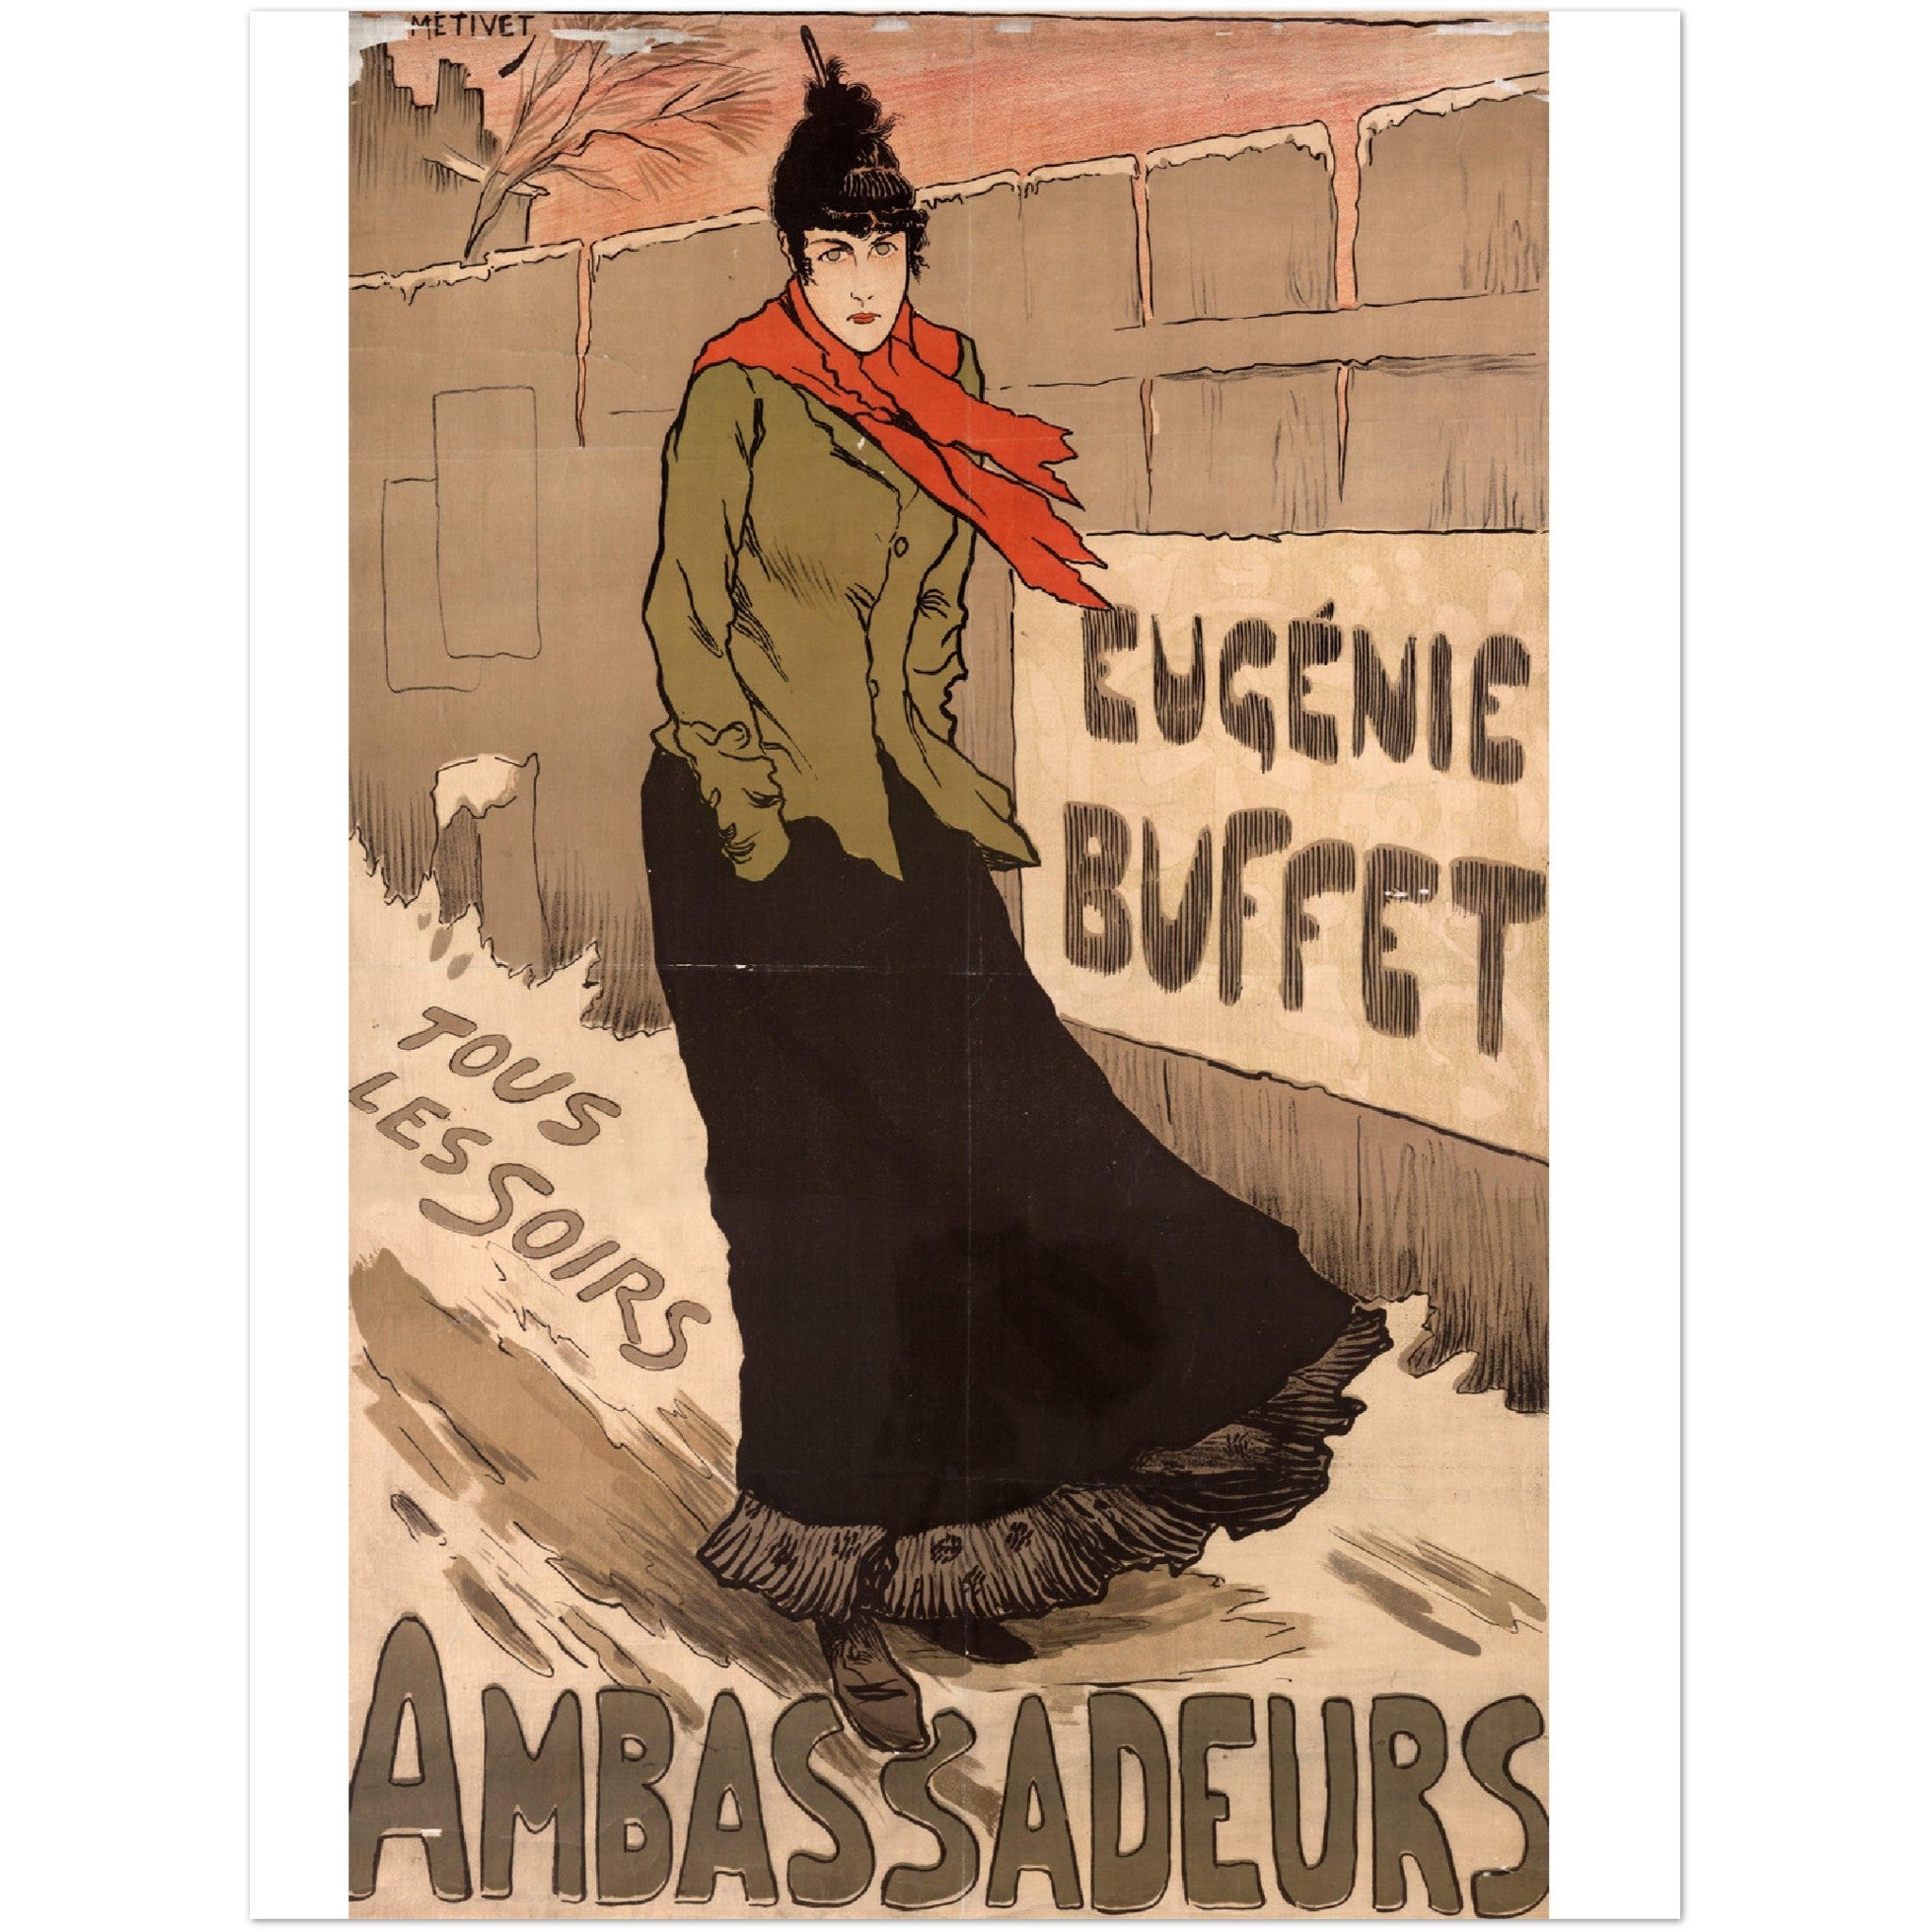 1135021 Eugenie Buffet Ambassadeurs Poster